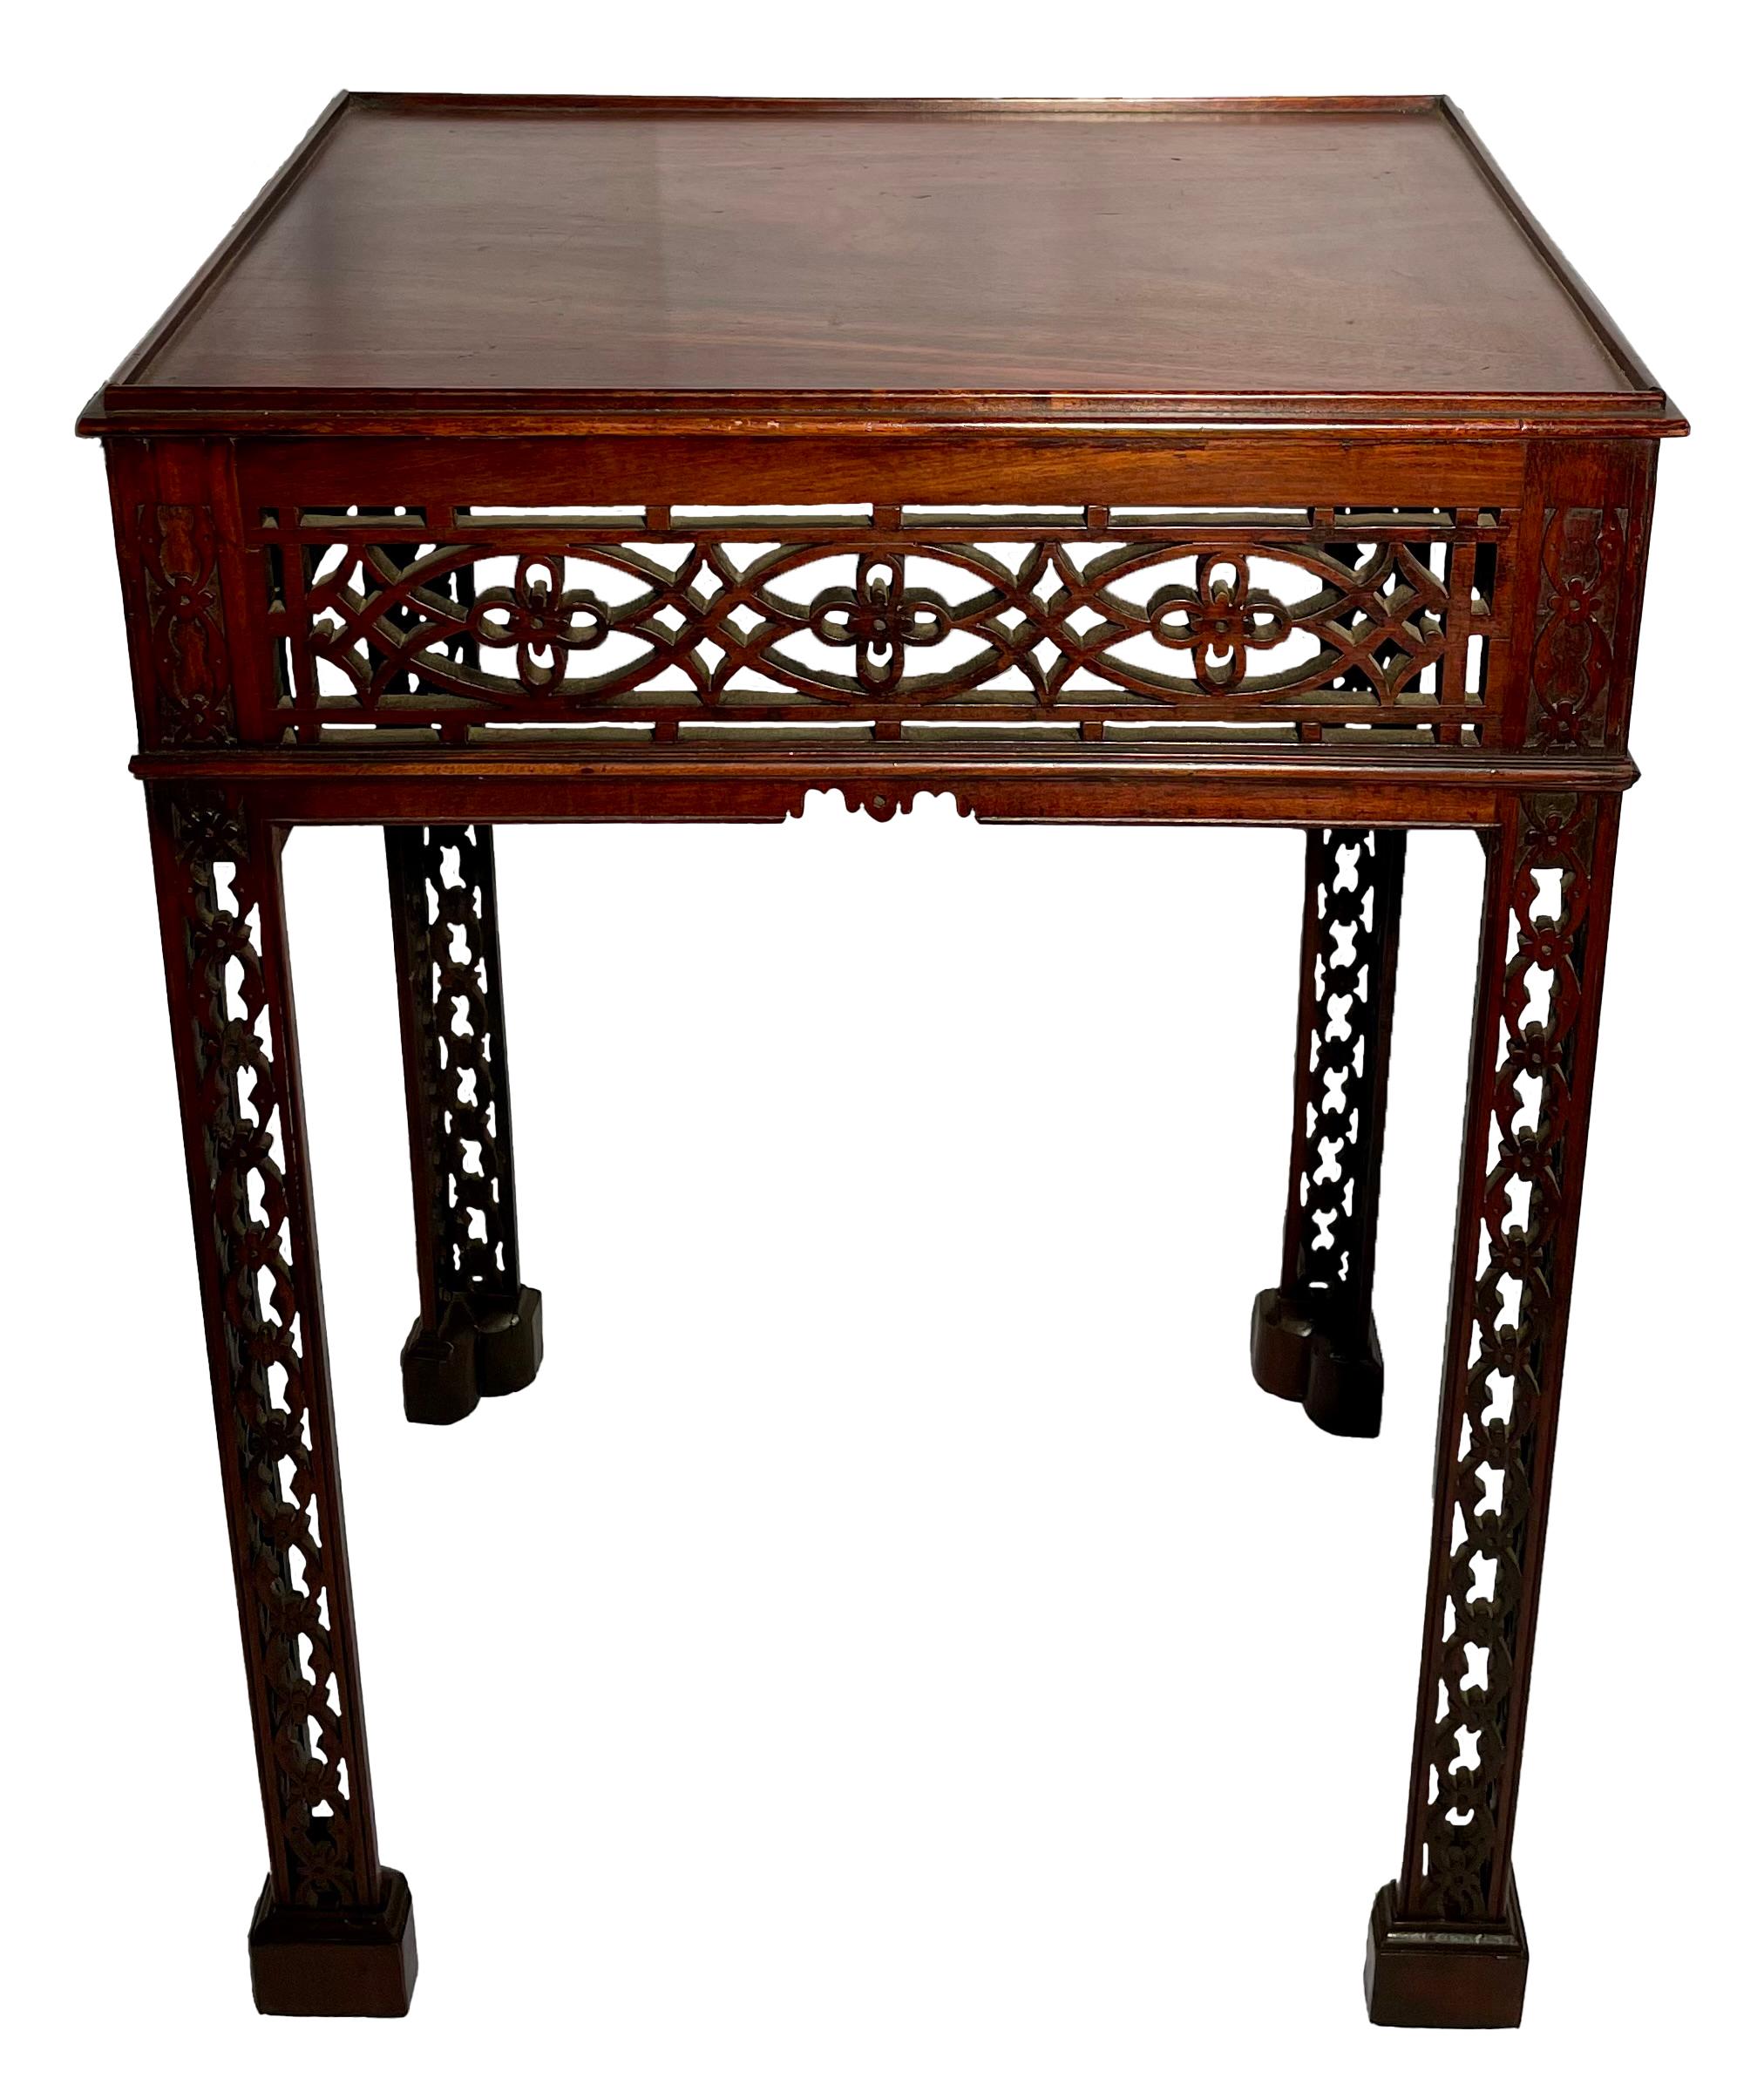 Ancienne table à thé victorienne anglaise en acajou avec des frettes de Chippendale, vers 1880.